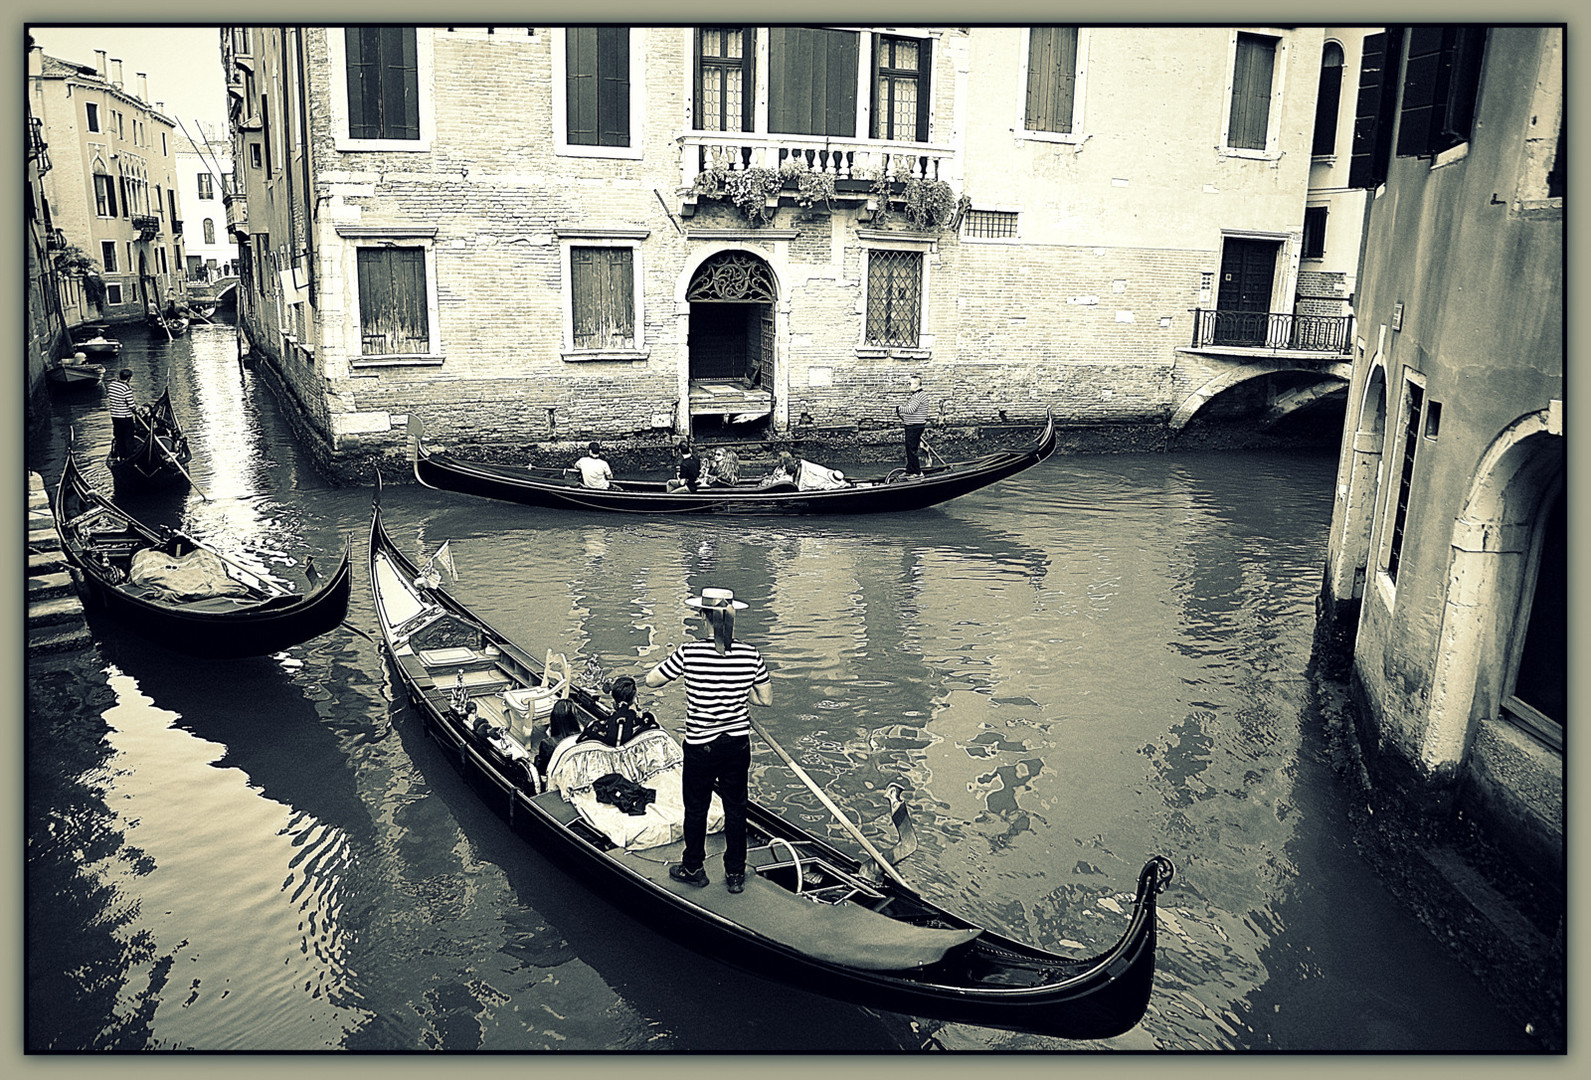   ...Venedig...  Gondolieri e gondole...